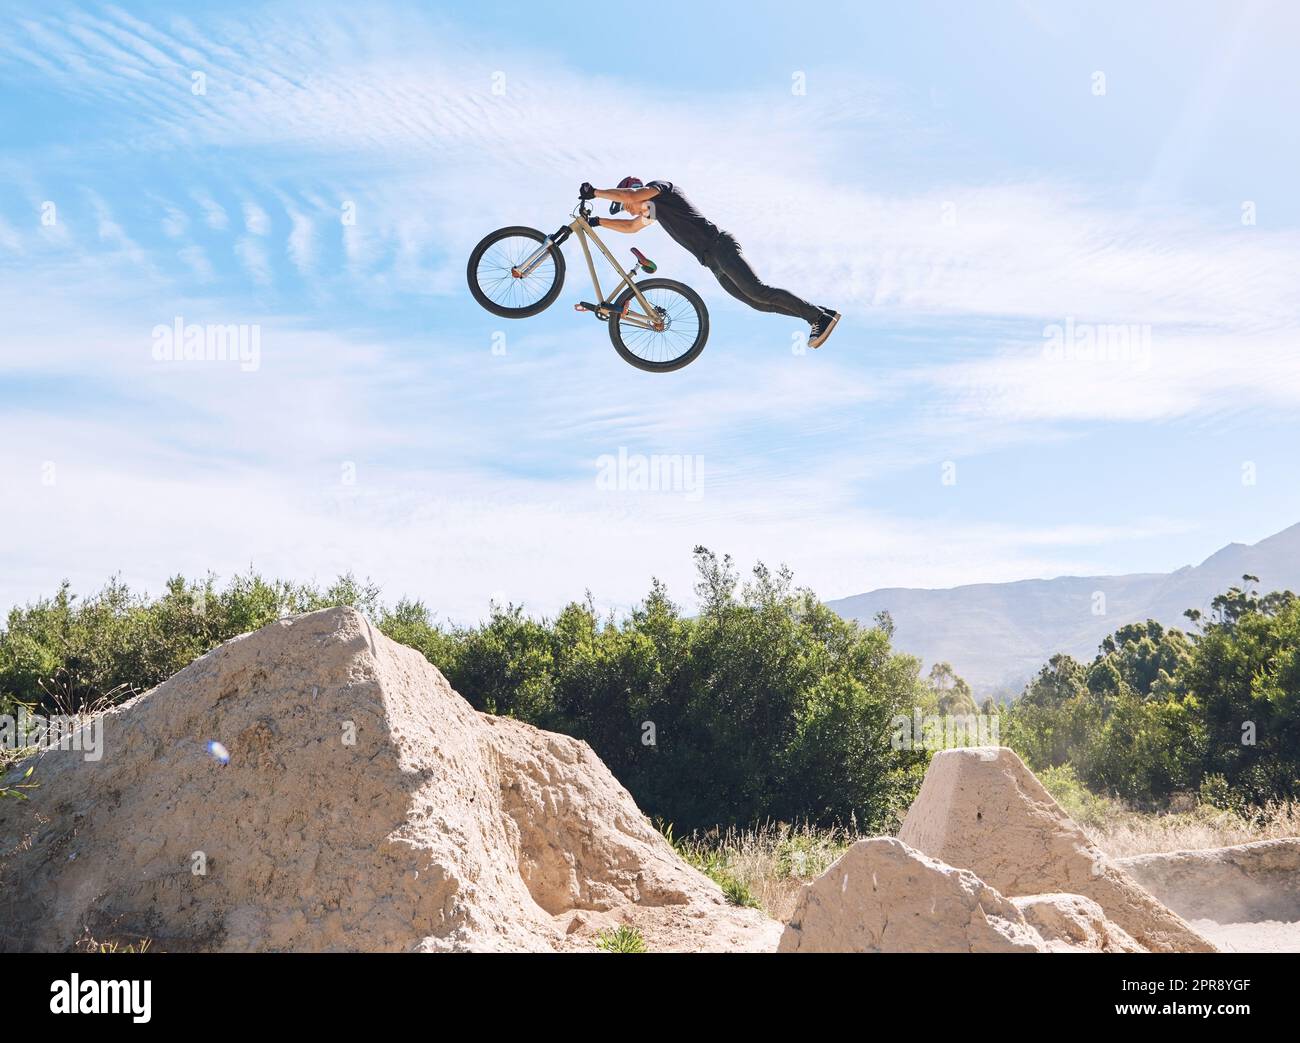 Ein junger Mann, der seine Fahrradkenntnisse unter Beweis stellt, während er draußen auf einem Fahrrad fährt. Adrenalin-Junkie, der draußen einen Dreckssprung praktiziert. Ein Mann trägt einen Helm und macht Extremsport mit einem Mountainbike Stockfoto